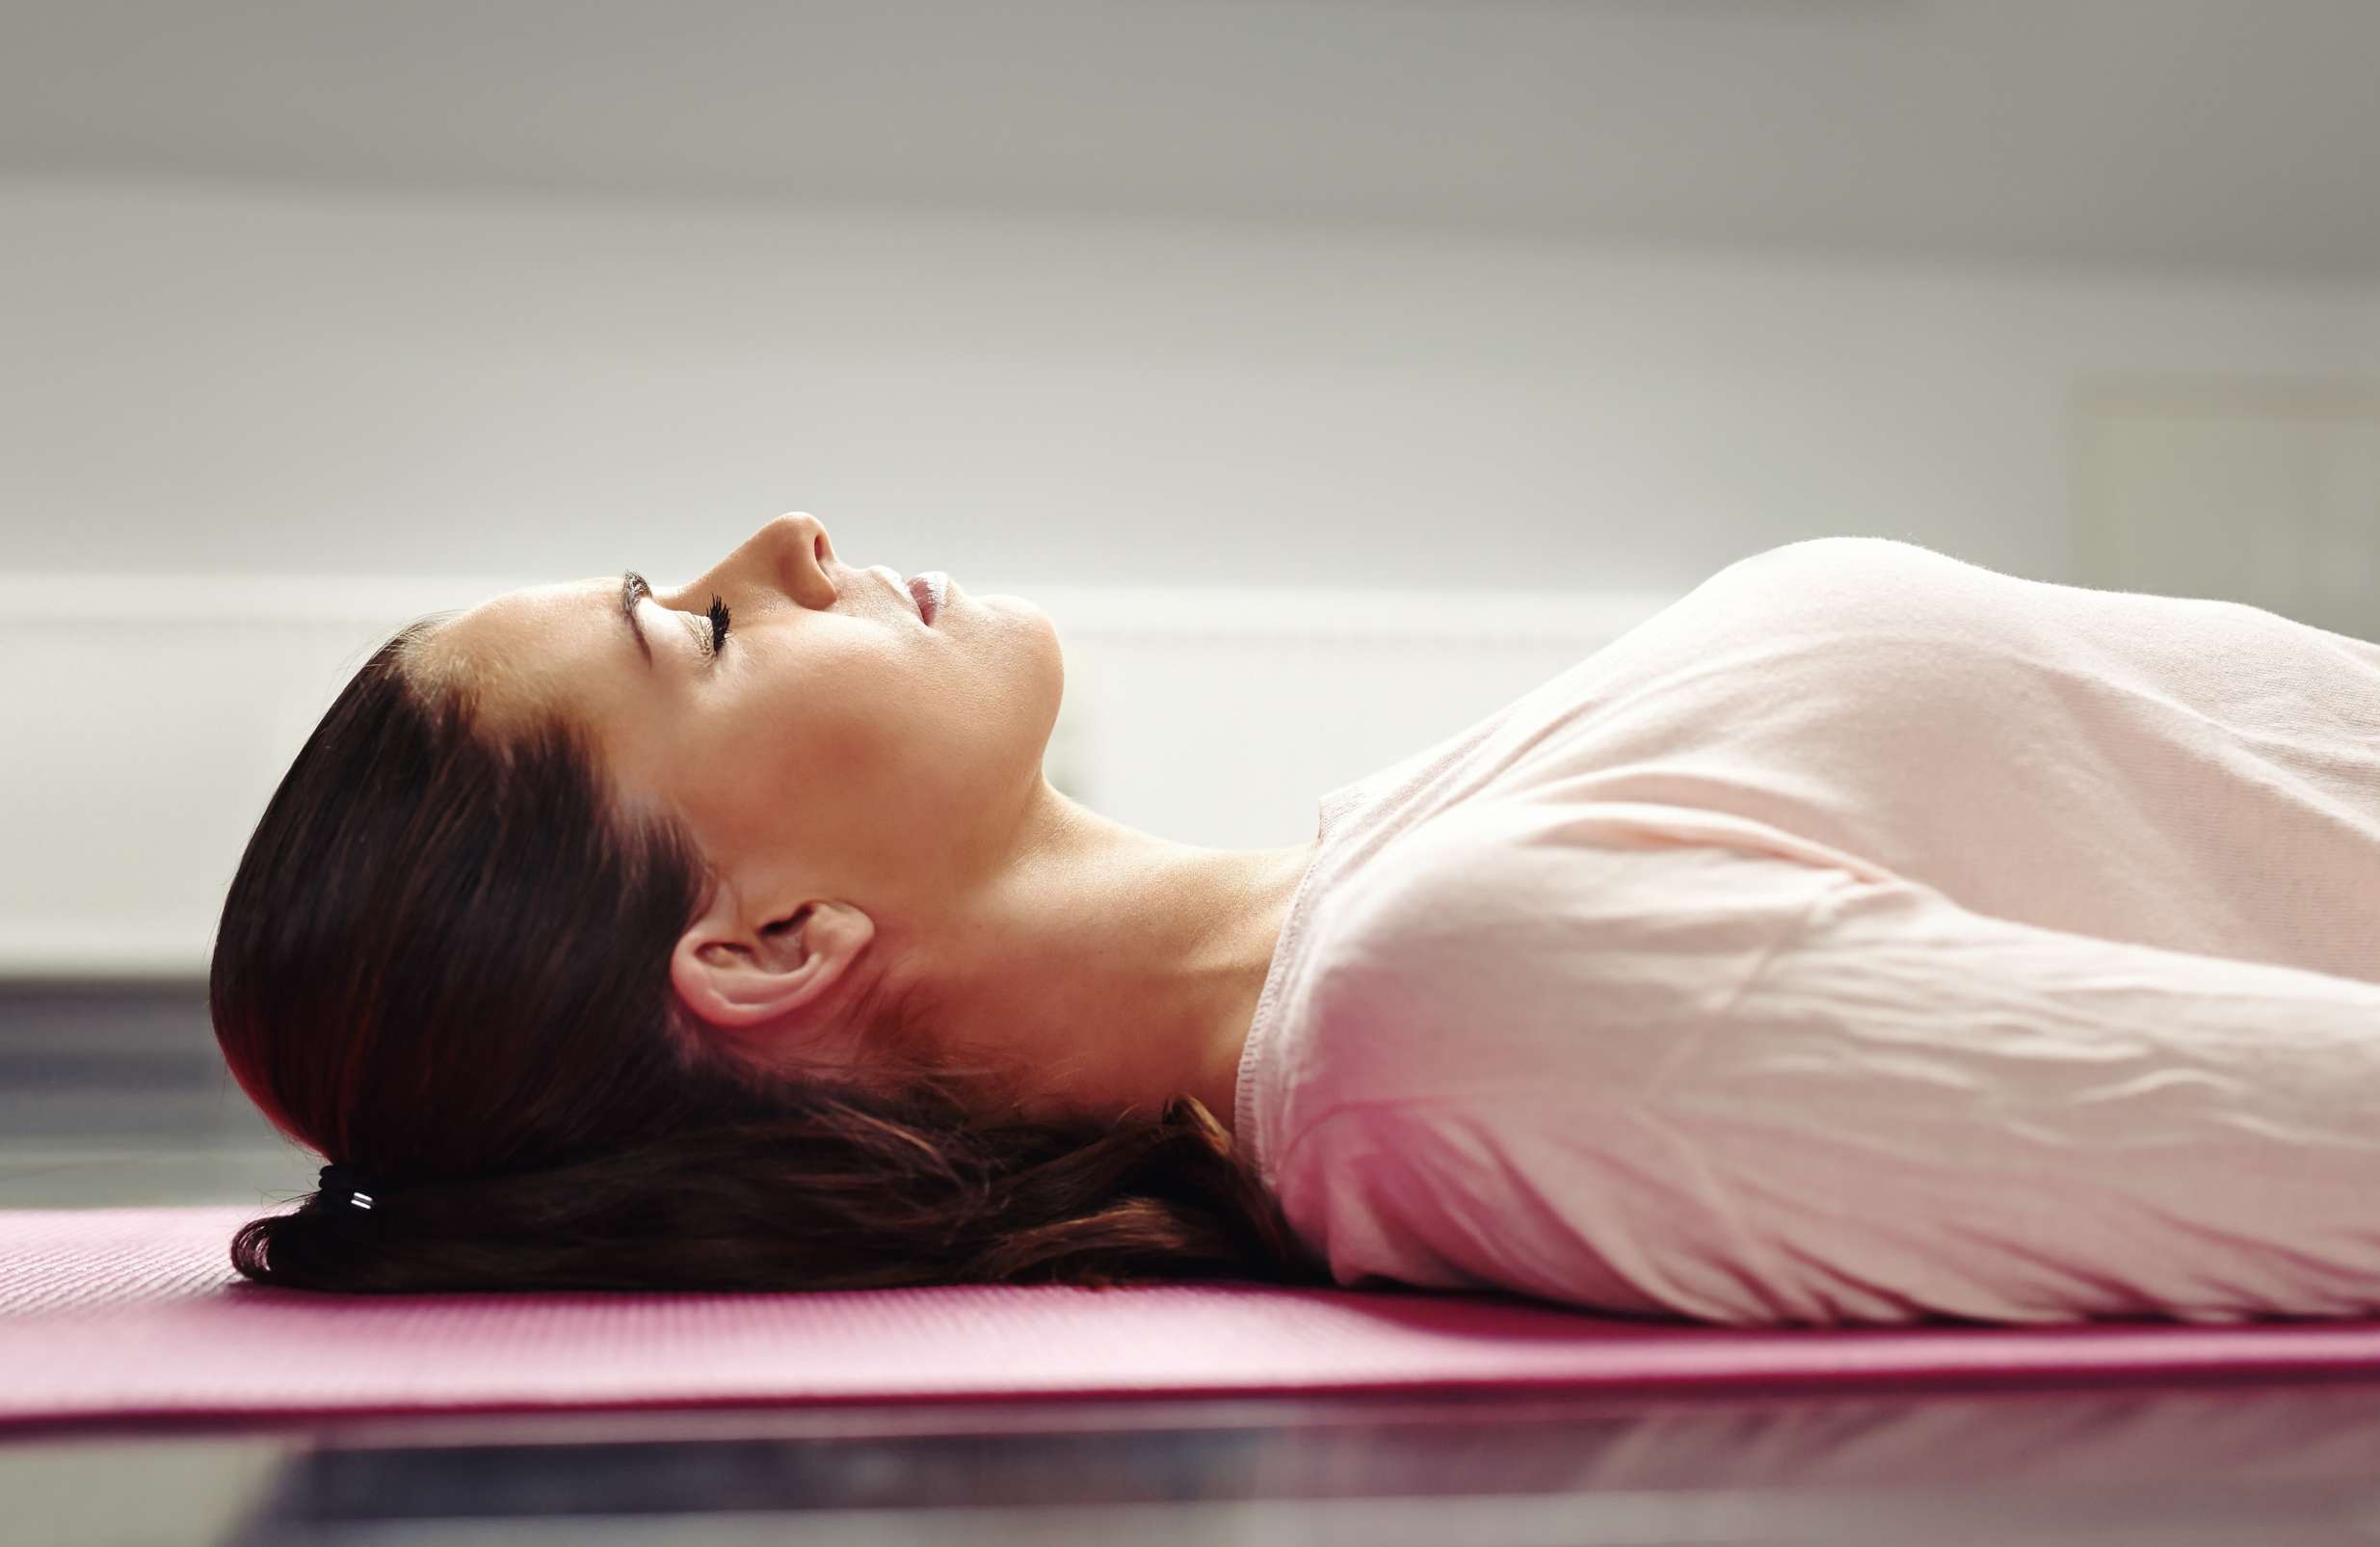 Frau liegend auf Yoga-Matte entspannt ihre Muskeln